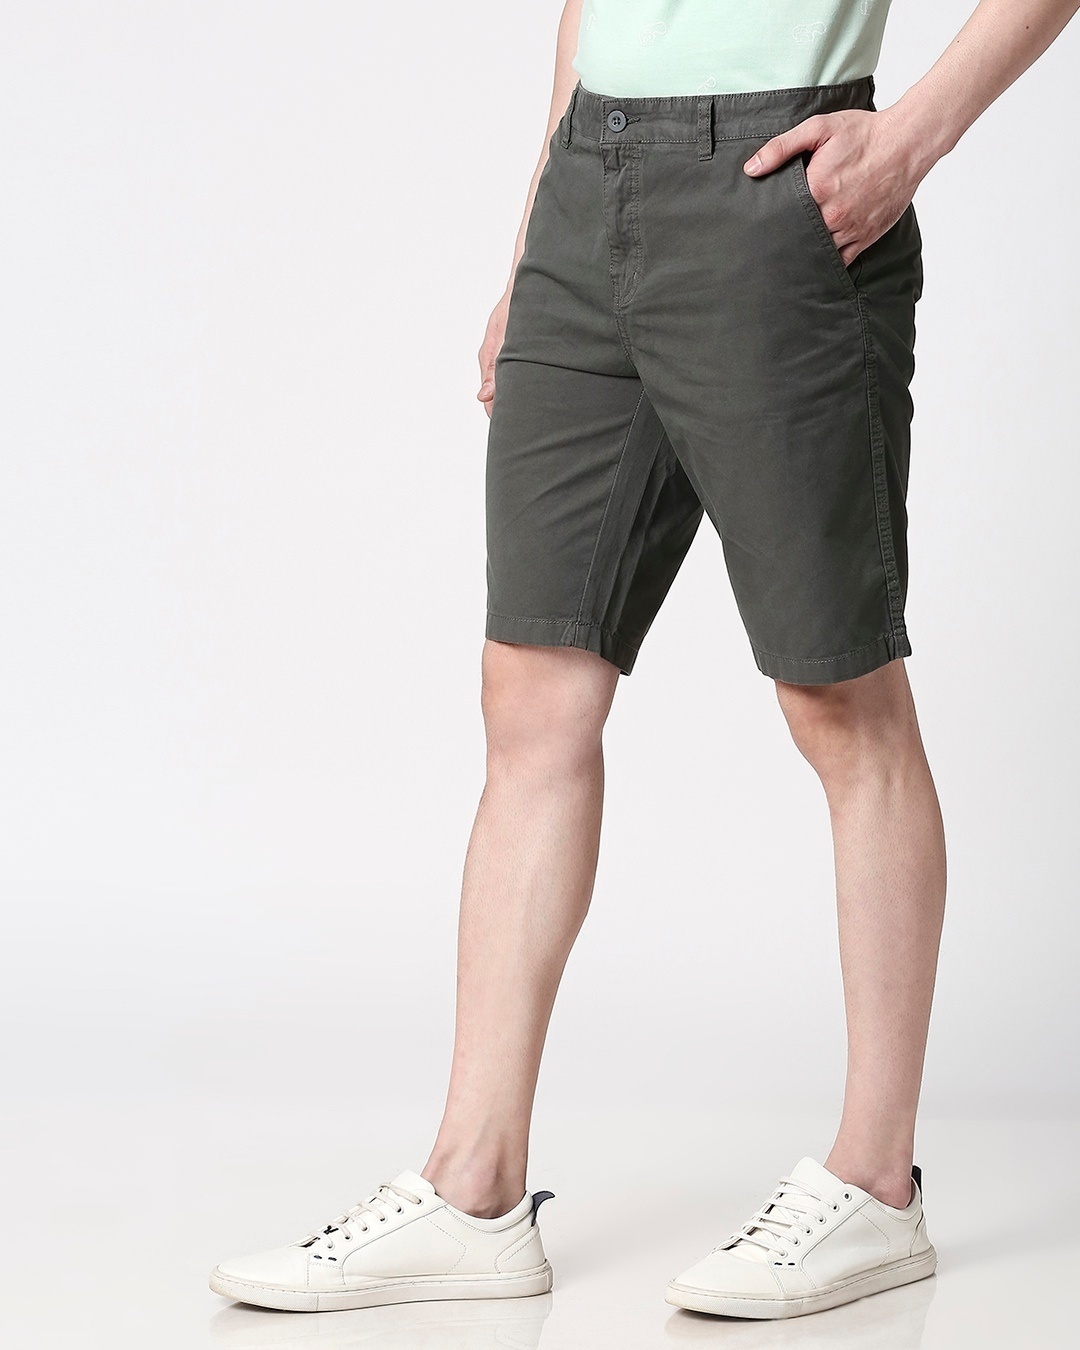 Shop Olive Green Men's Shorts-Design